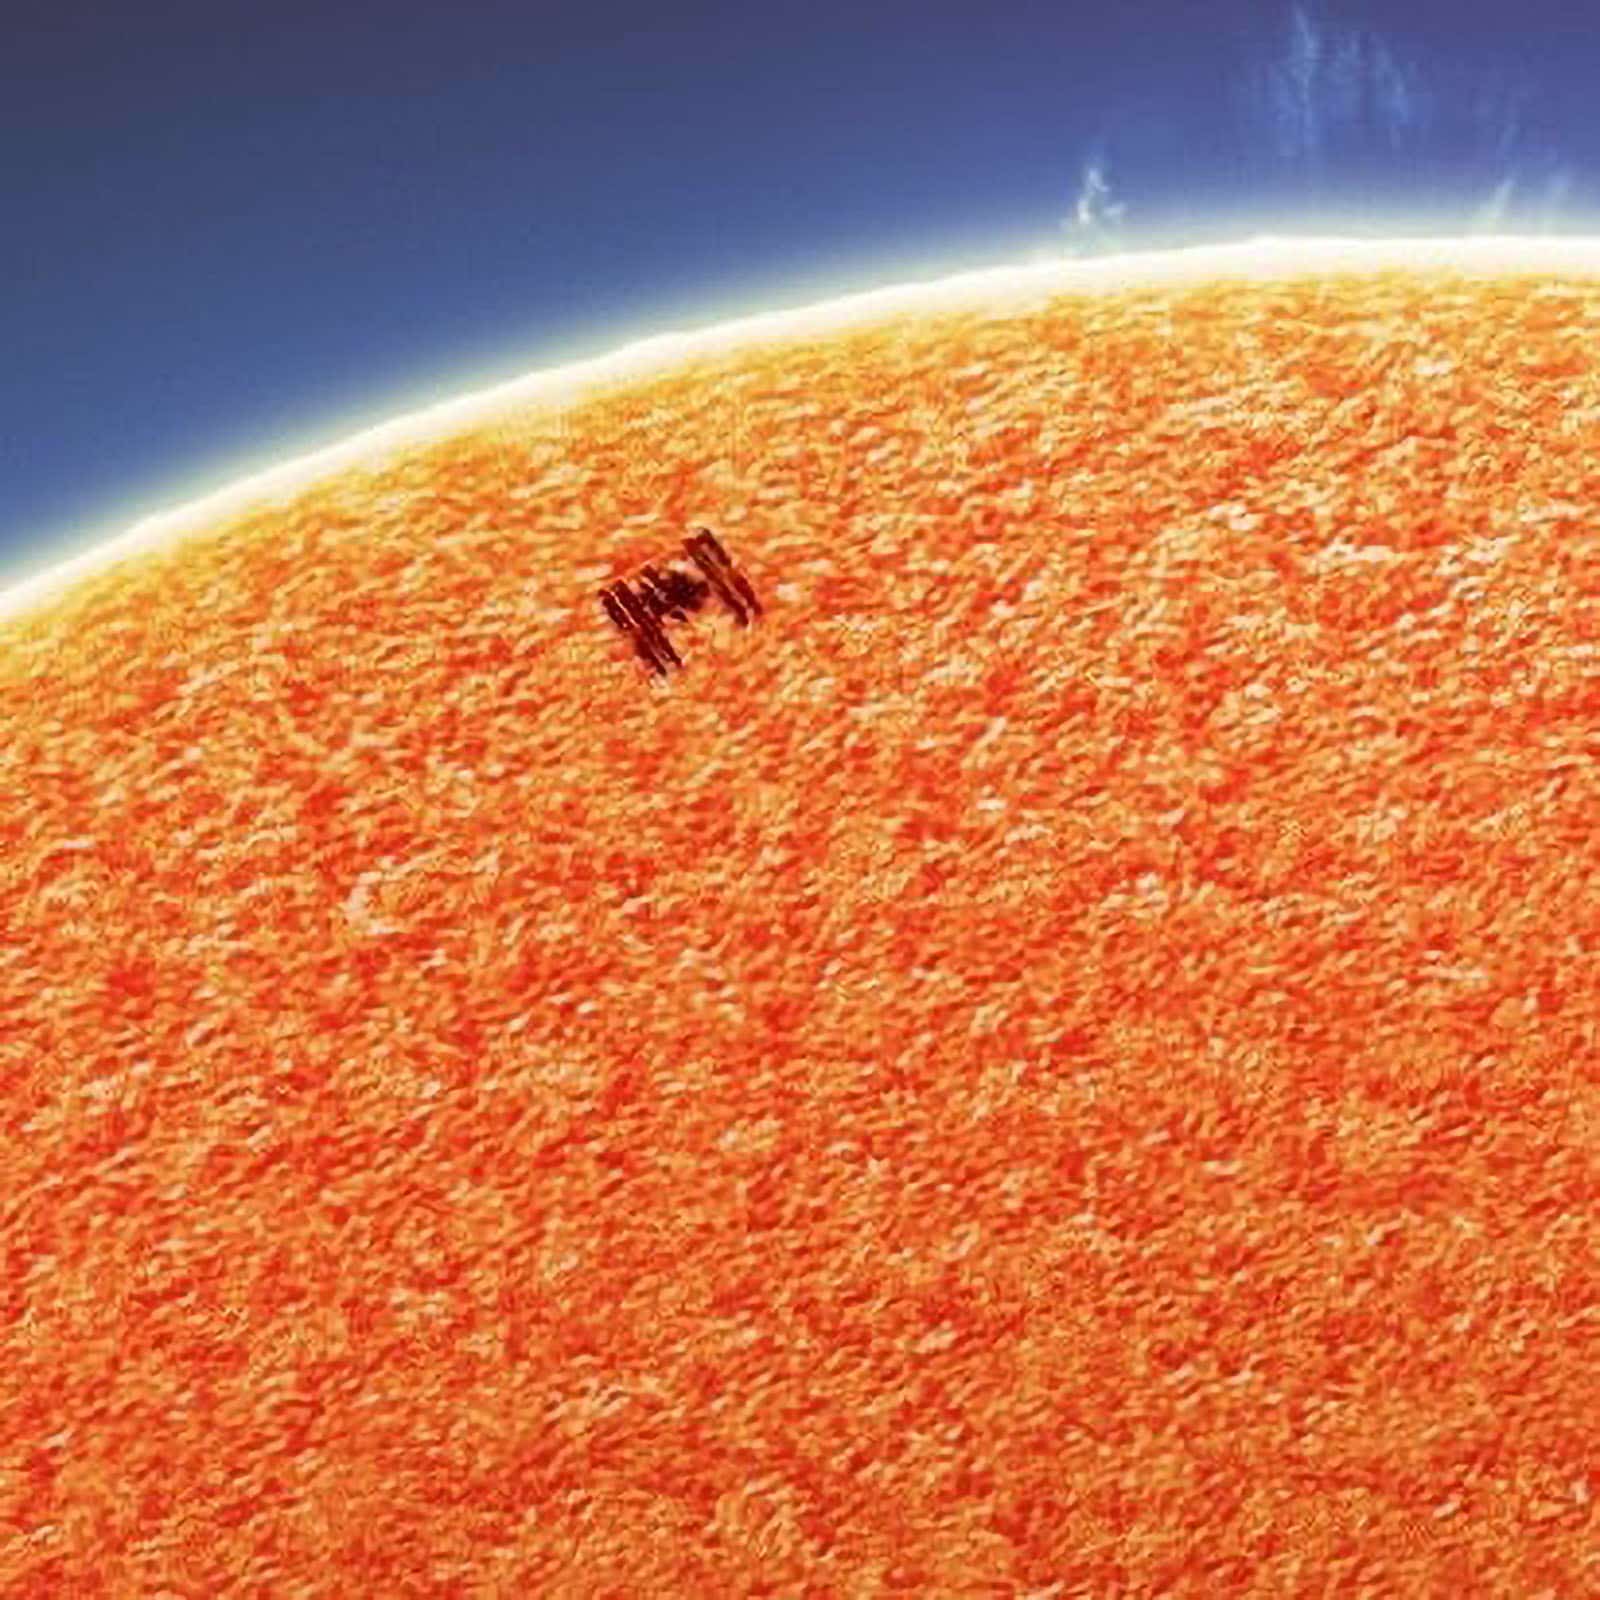 Nhiếp ảnh gia đã bắt được khoảnh khắc Trạm Không gian Quốc tế bay qua Mặt Trăng và Mặt Trời